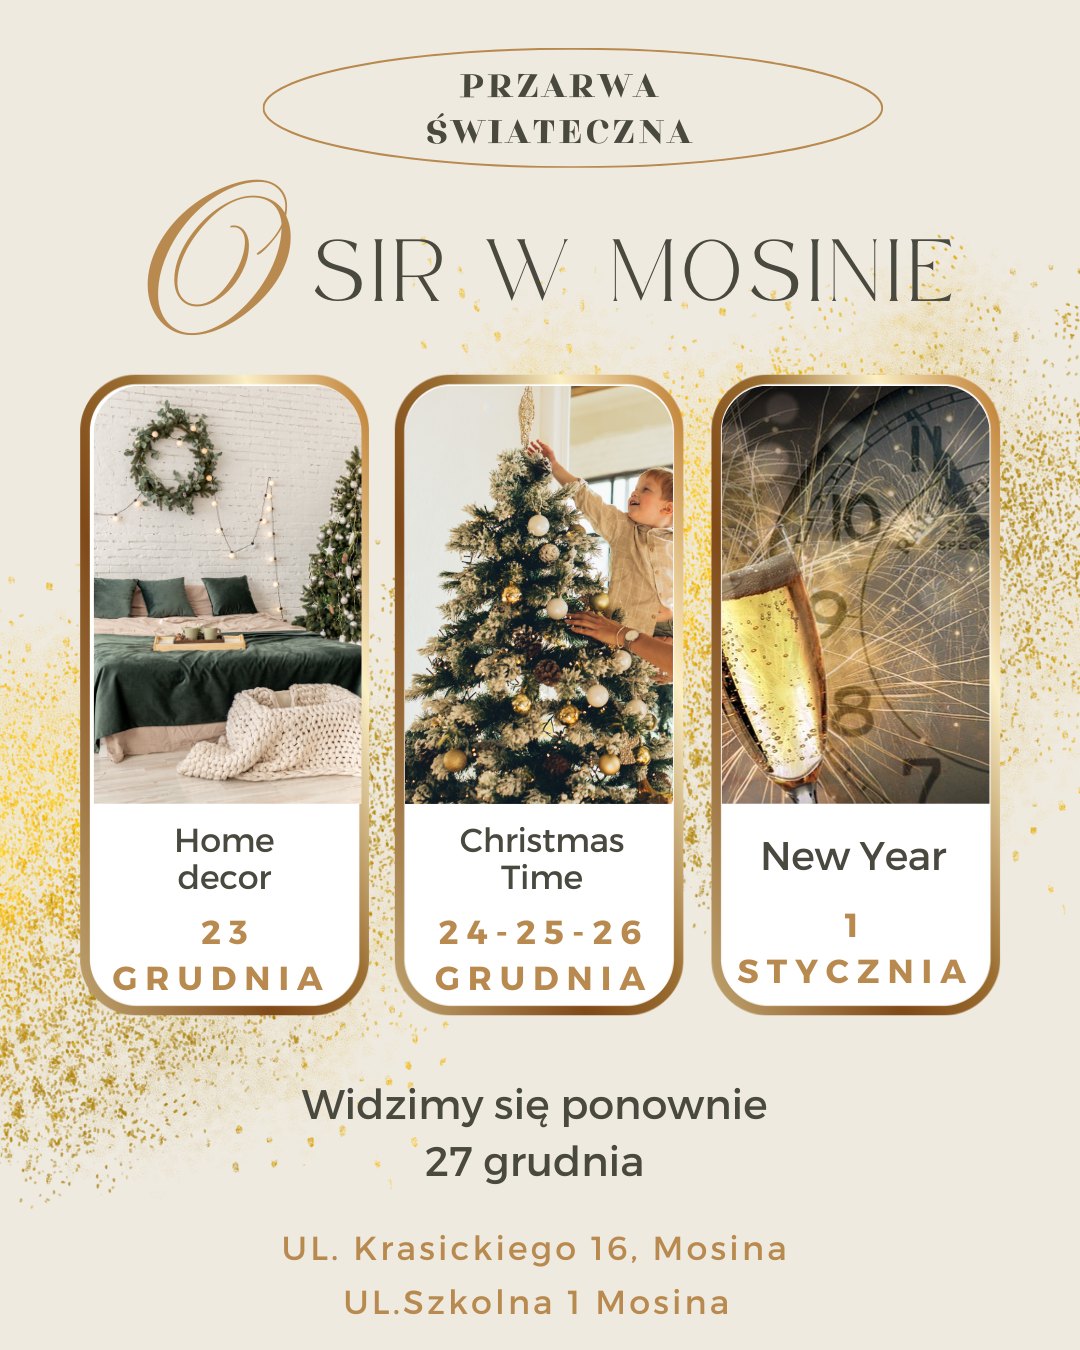 Czarny tekst na złotym tle. Trzy obrazki: dom w świątecznym klimacie, choinka oraz szampan z zegarem.